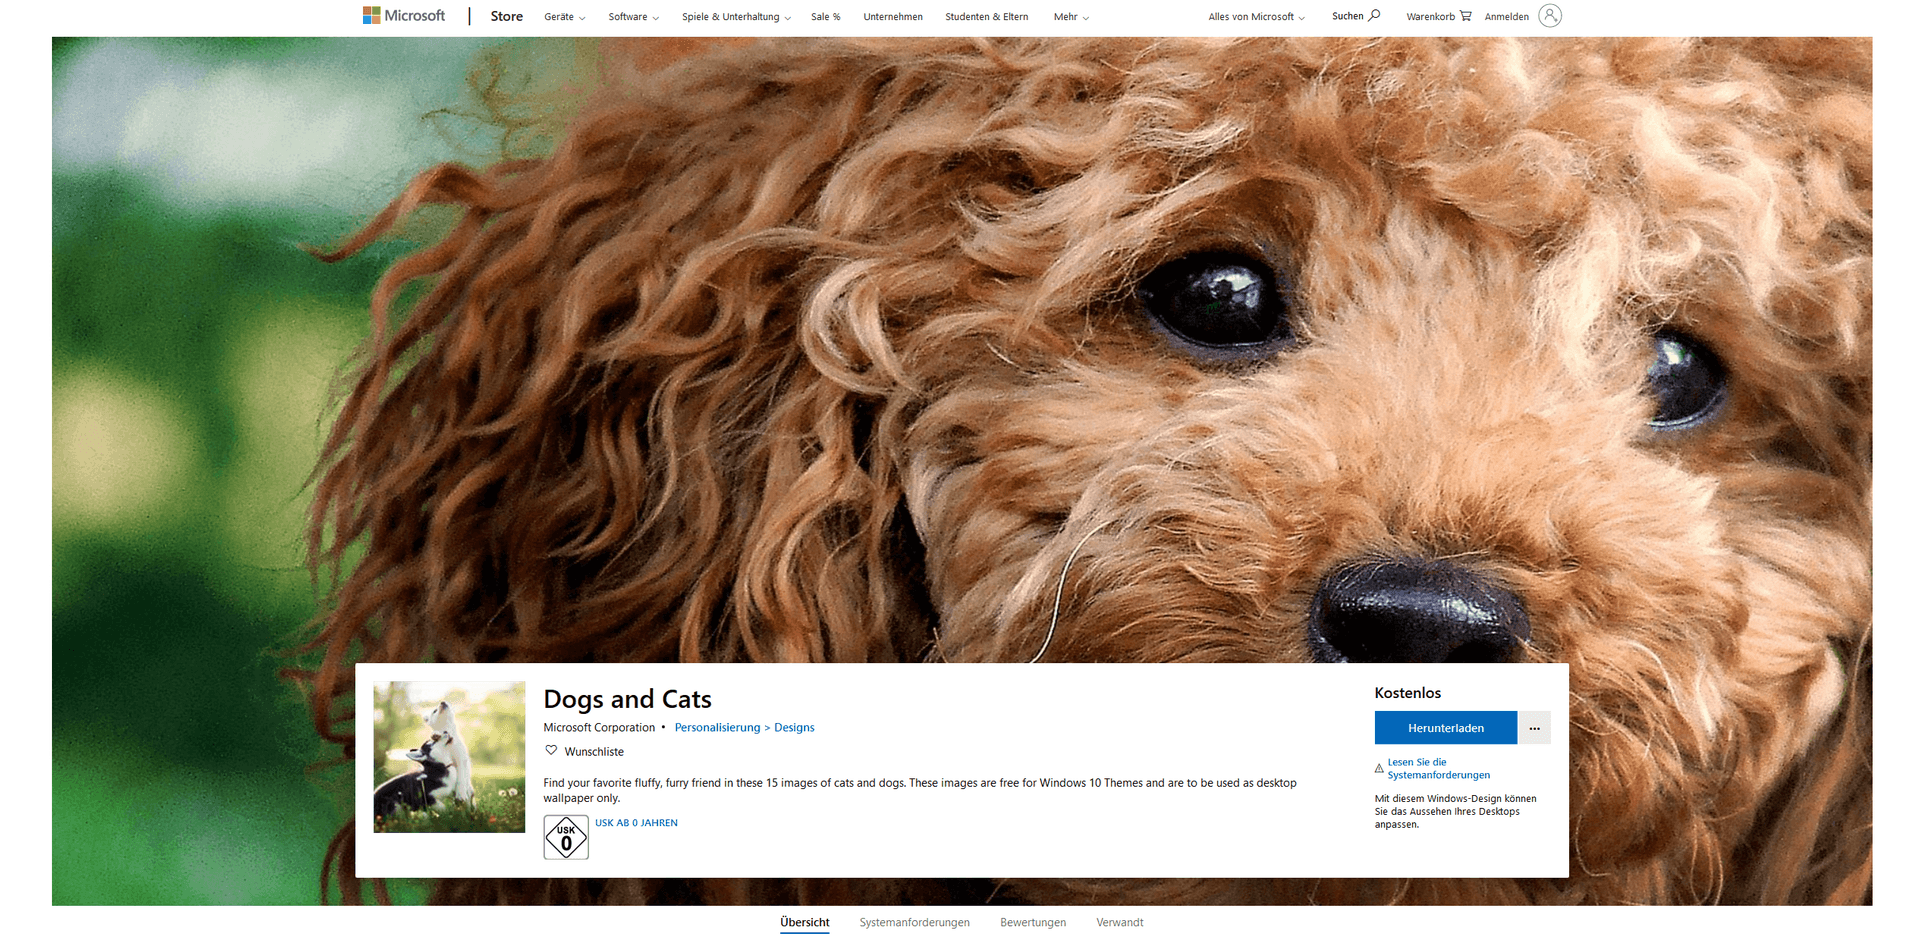 Ein Klassiker unter den Desktophintergründen: Katzen und Hunde. 15 dieser Bilder bekommen Sie im "Dogs and Cats"-Paket.